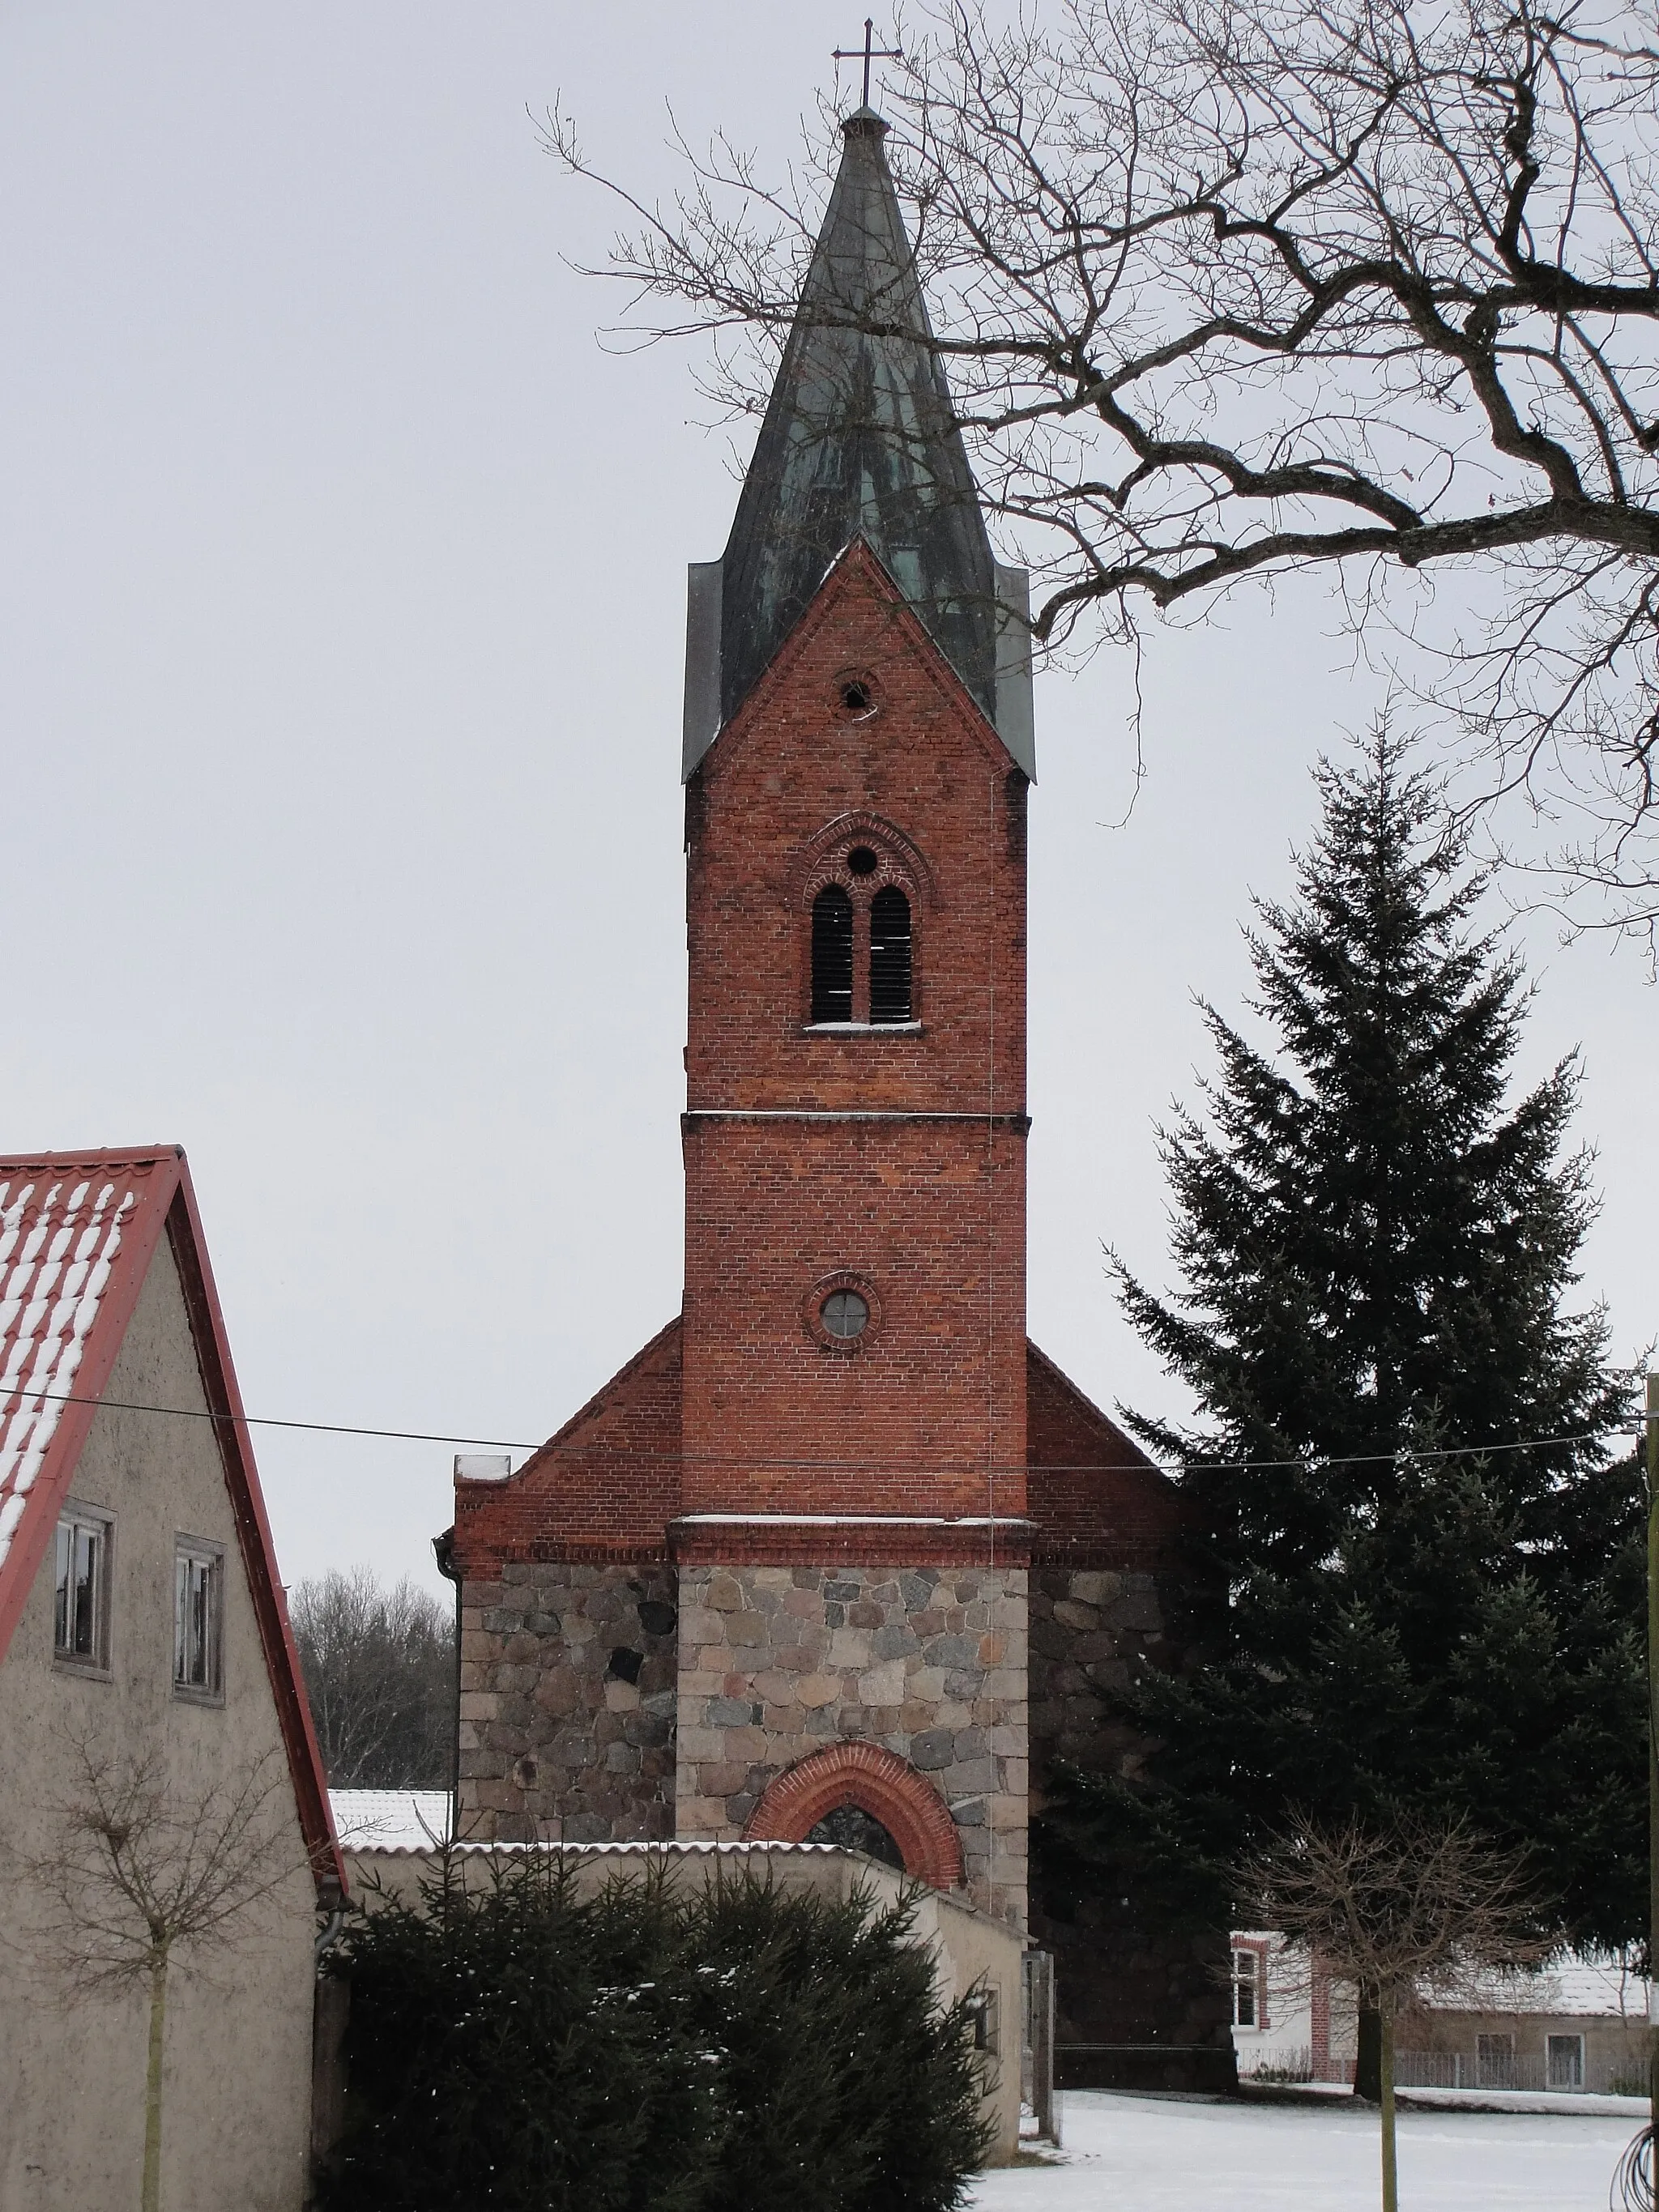 Photo showing: Turmseite der Kirche in Lockstädt, Stadt Putlitz, im Winter.